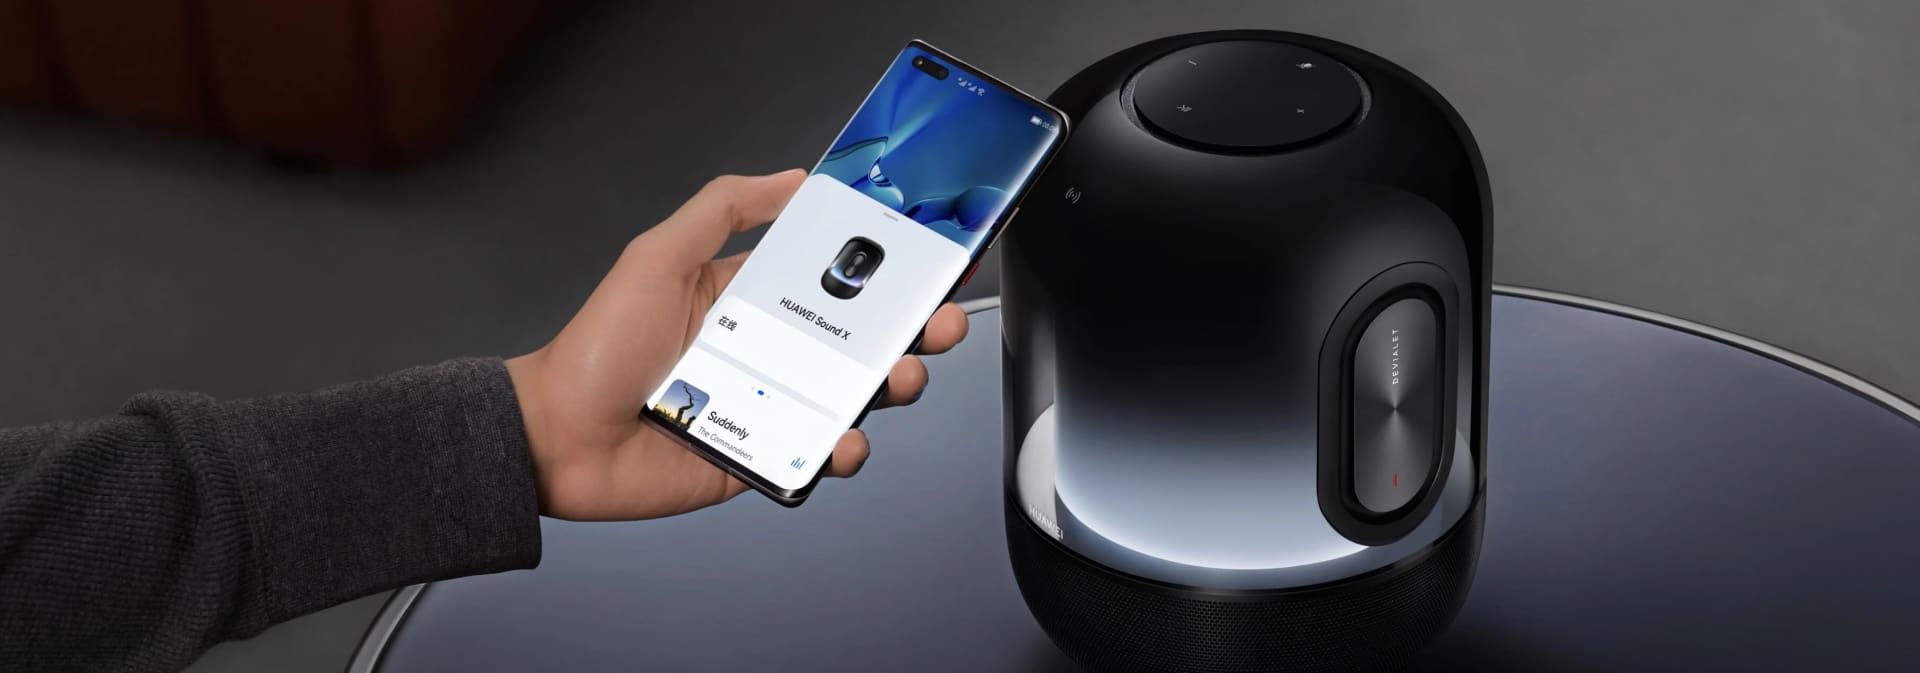 Imagem mostra mão de uma pessoa se aproximando da smart speaker Huawei Sound X, lançada hoje pela marca